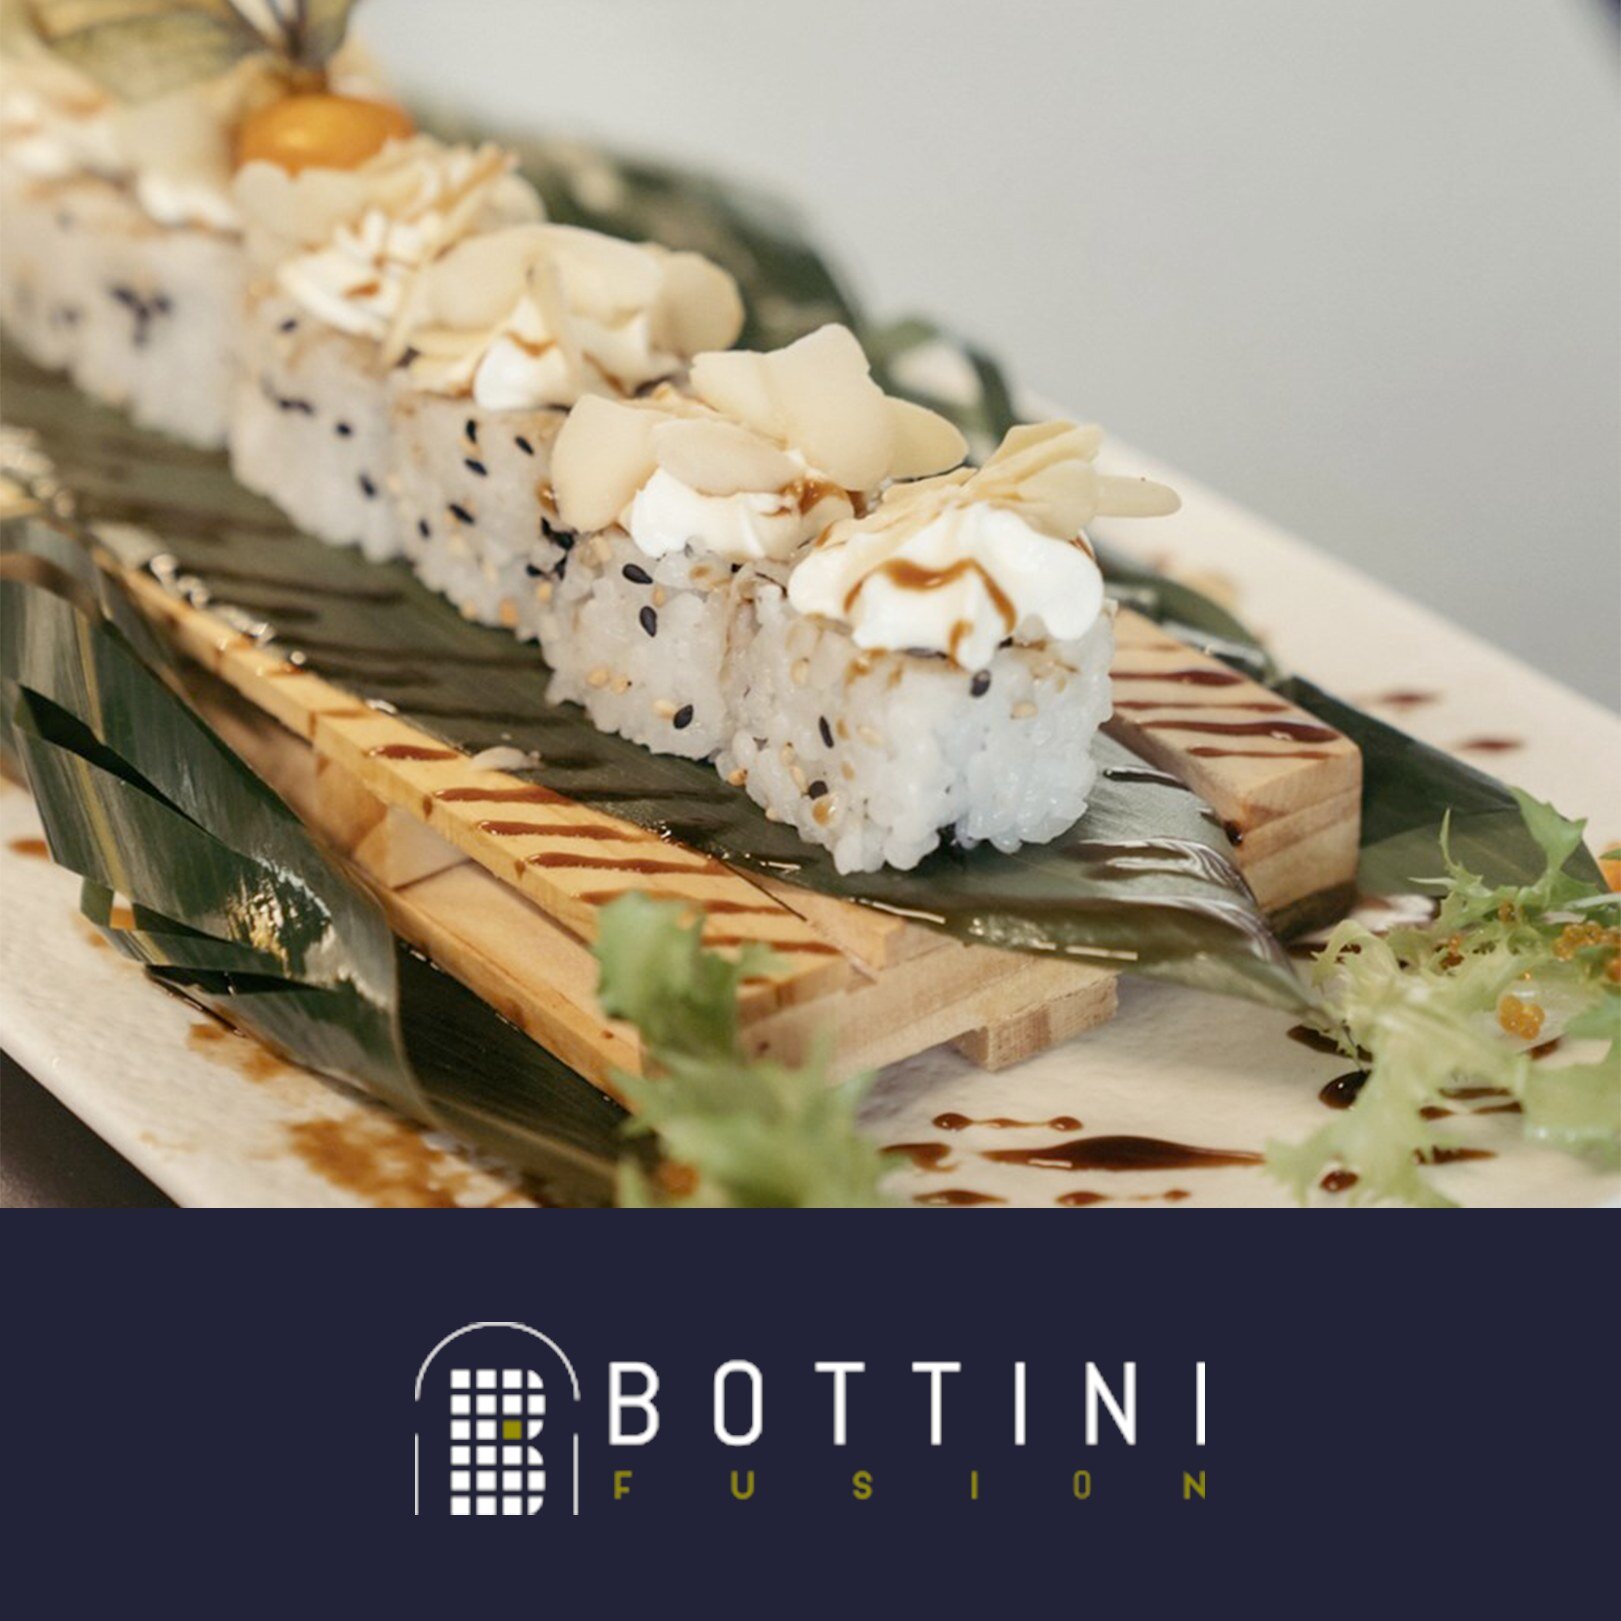 Nella semplicit&agrave; di un piatto roll, un sapore incredibile 😋 

Provalo da Bottini Fusion, a pranzo o a cena, siamo anche aperti tutto il giorno con la caffetteria ☕